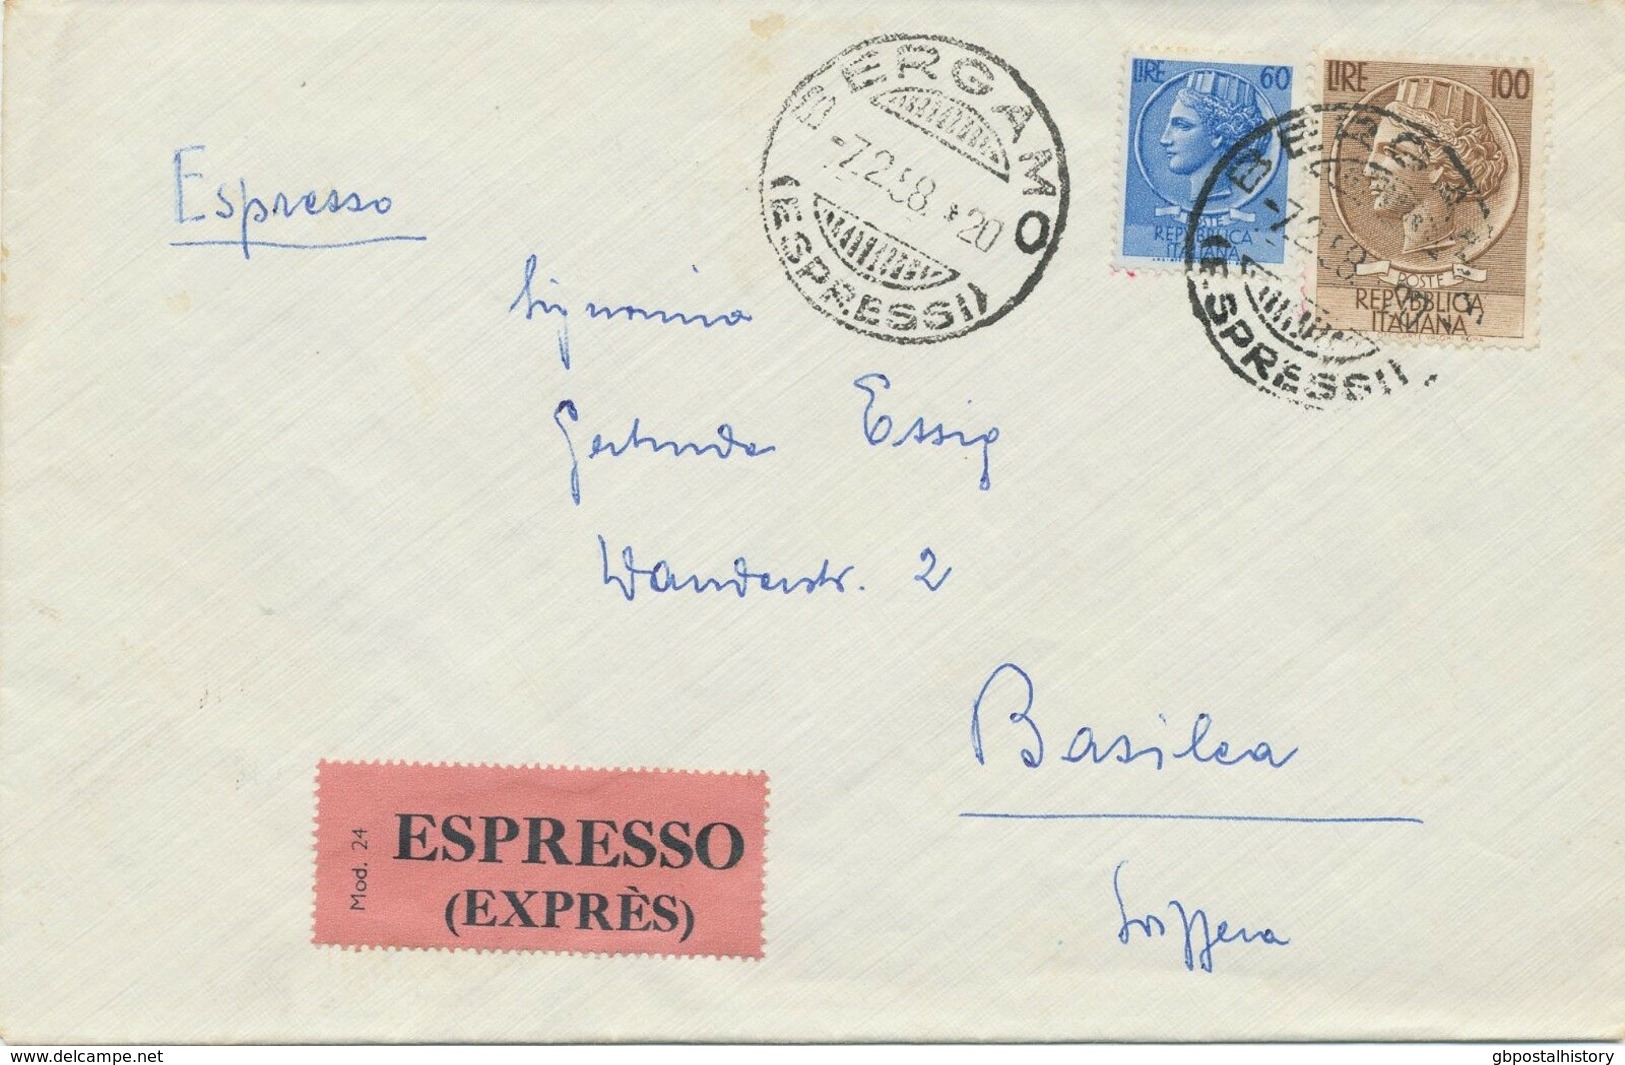 ITALY 1957/77 7 Different Superb ESPRESSO-covers (Express Covers) All Foreign - Posta Espressa/pneumatica